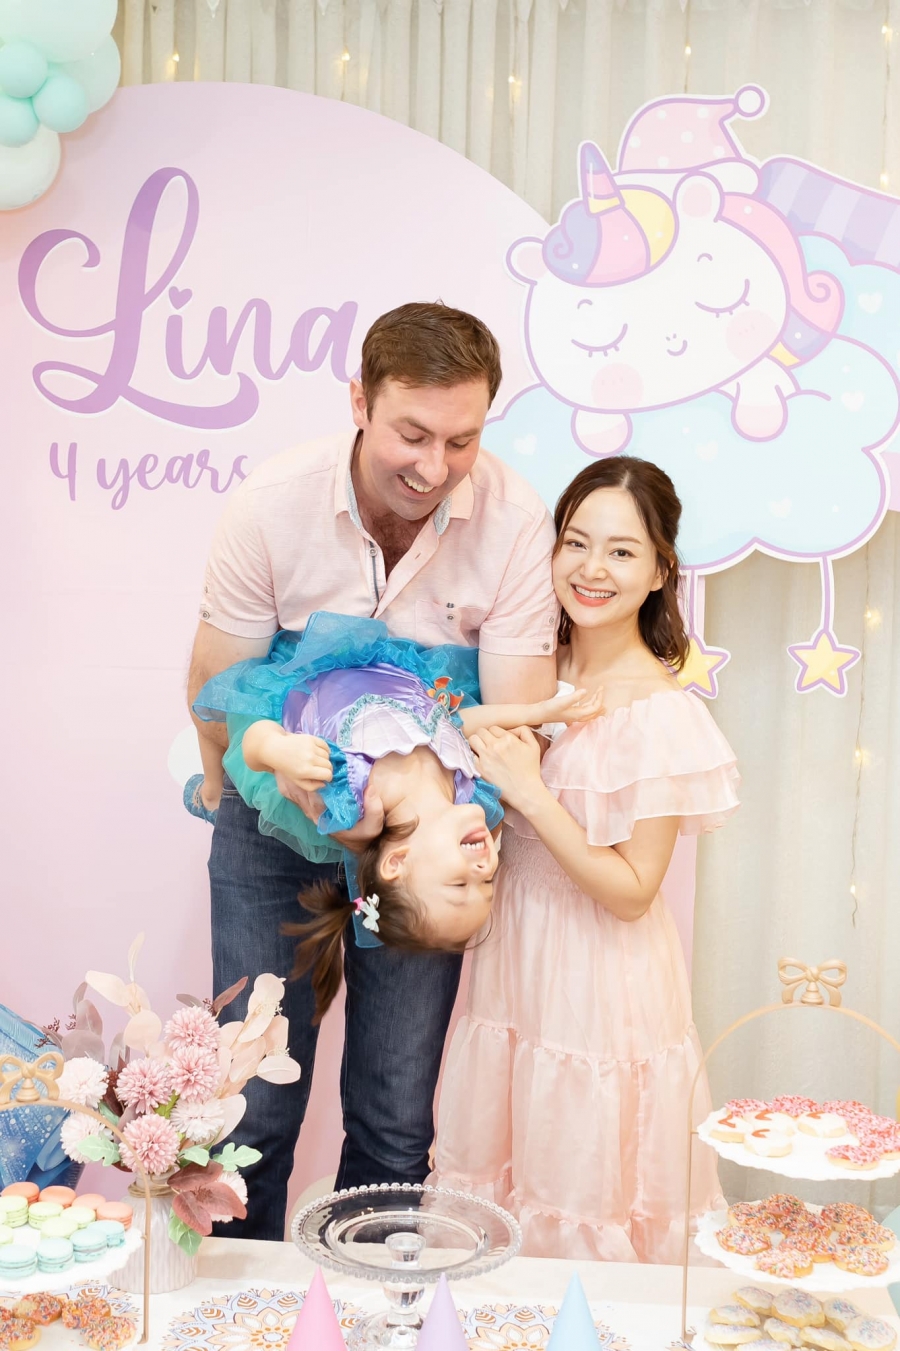 Gác lại nỗi buồn của Vân Khánh, Lan Phương tổ chức sinh nhật 4 tuổi linh đình cho con gái lai Tây - Ảnh 2